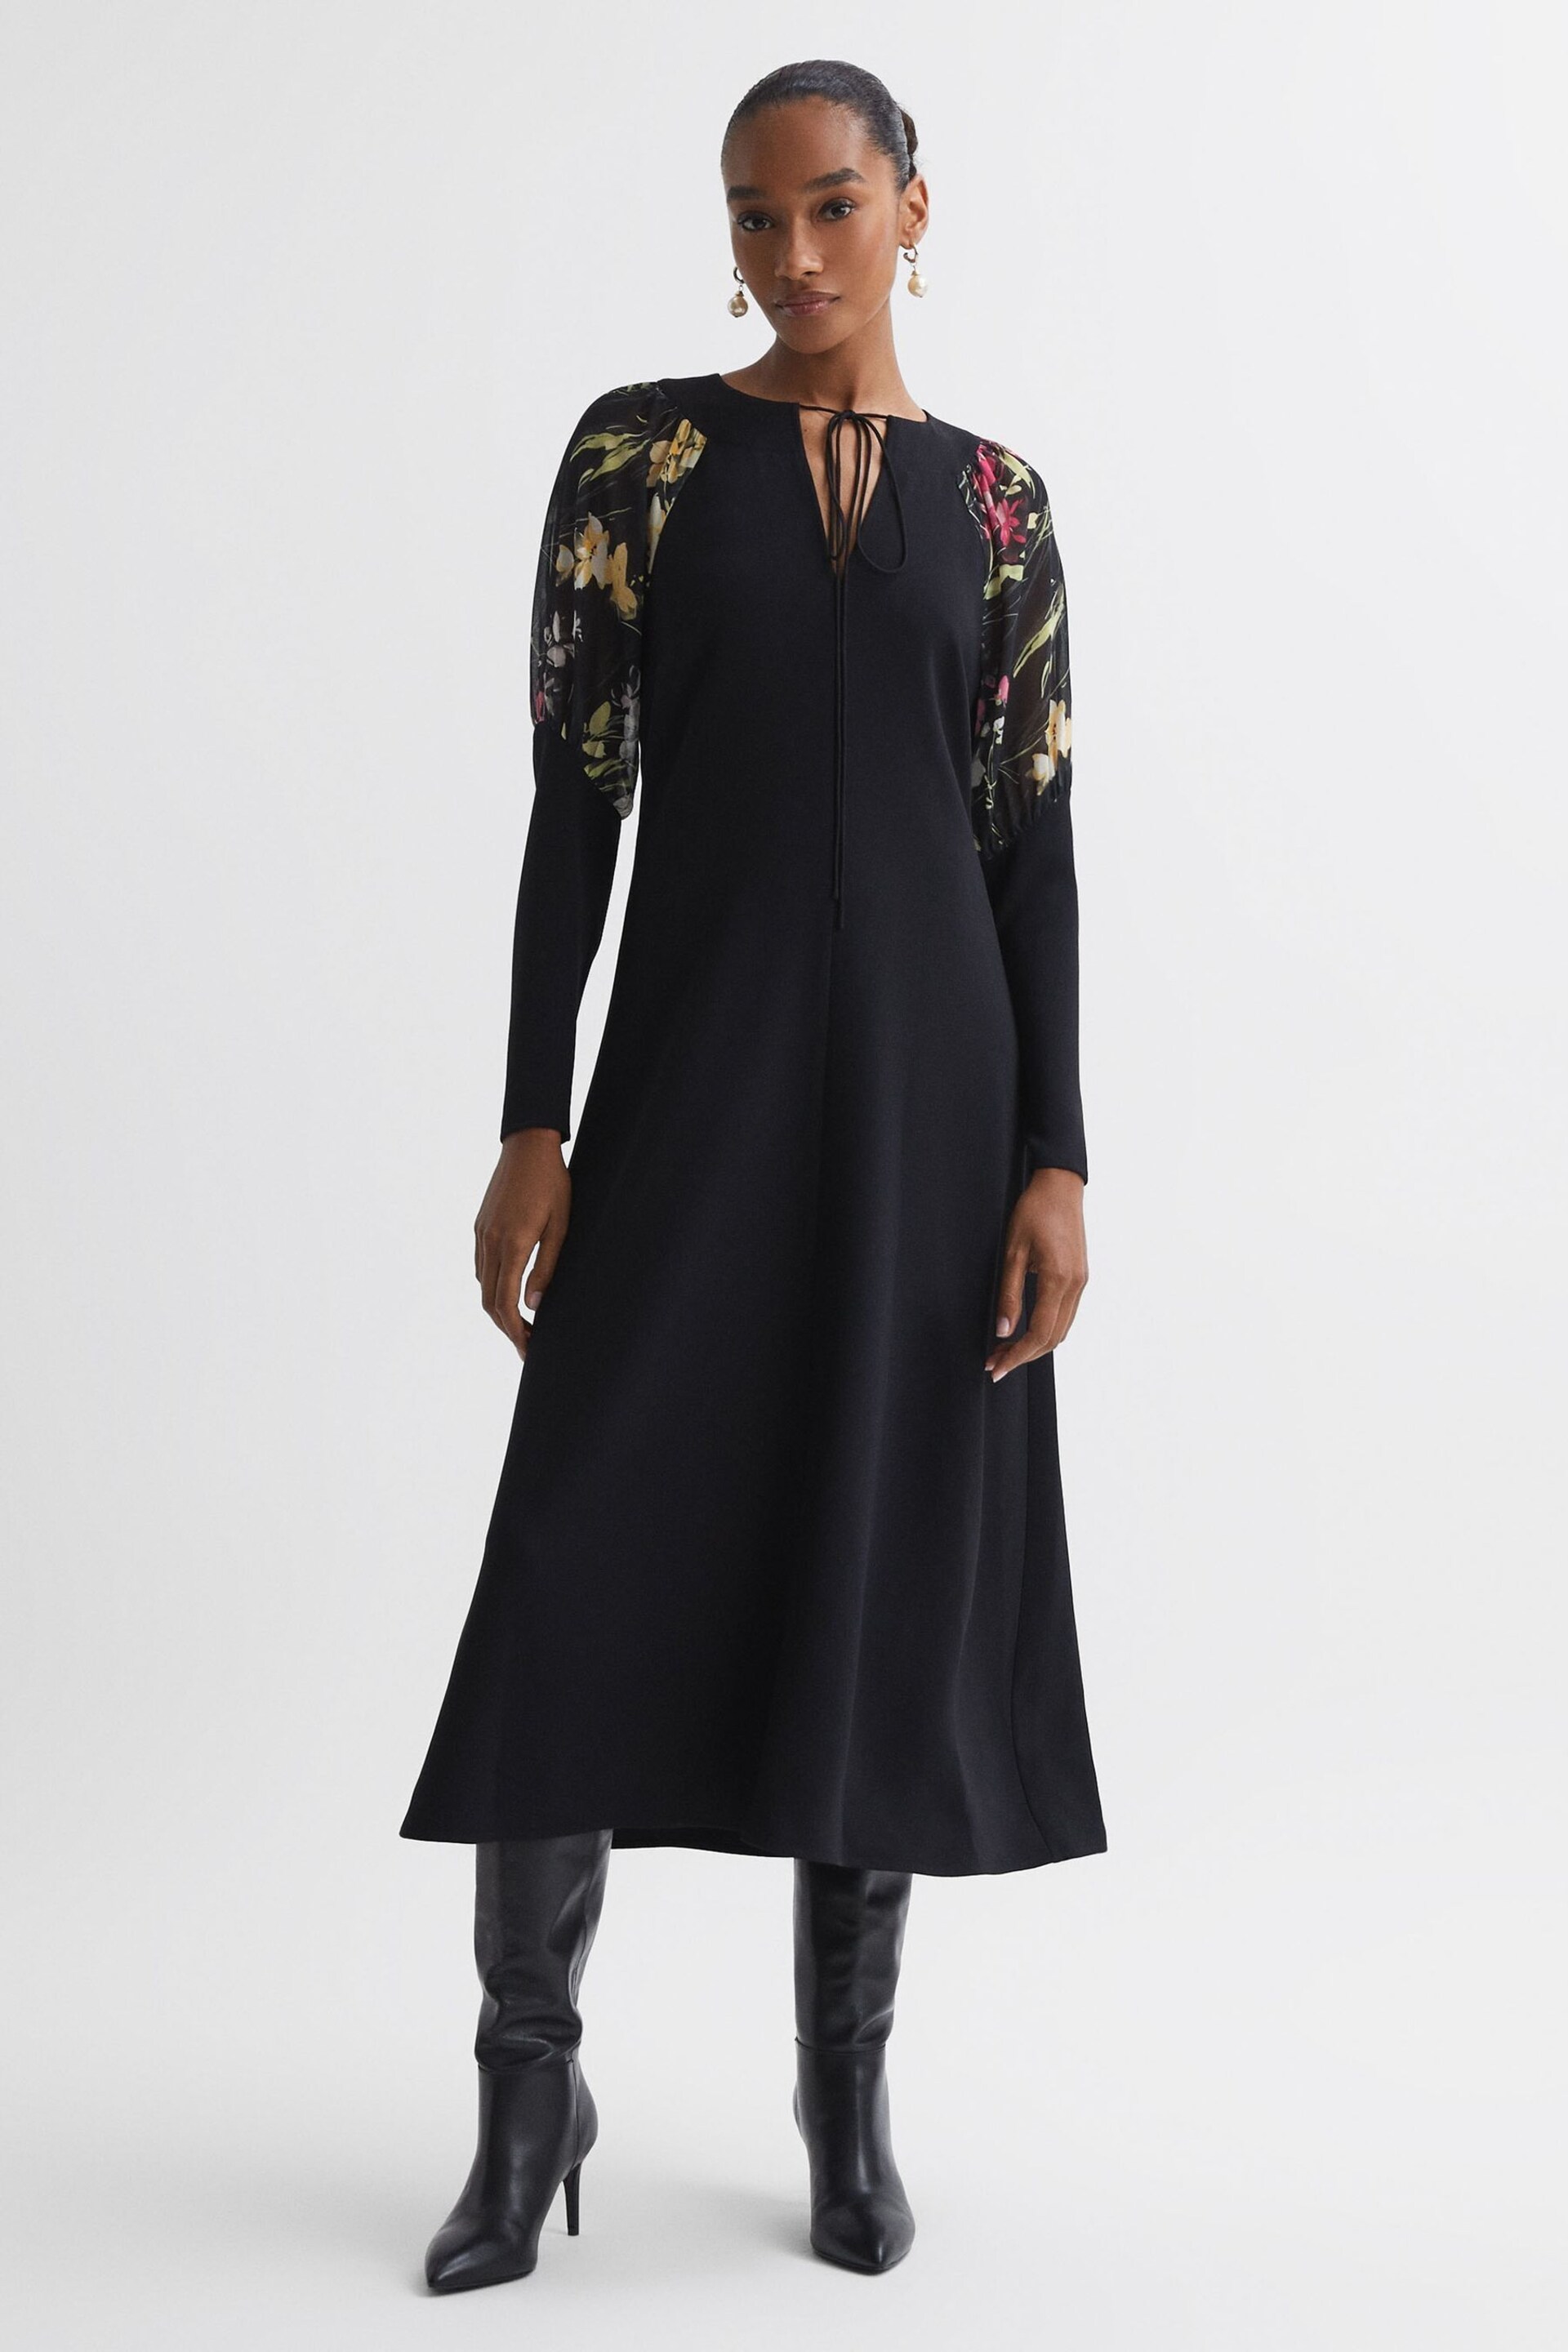 Florere Print Sleeve Midi Dress - Image 1 of 5